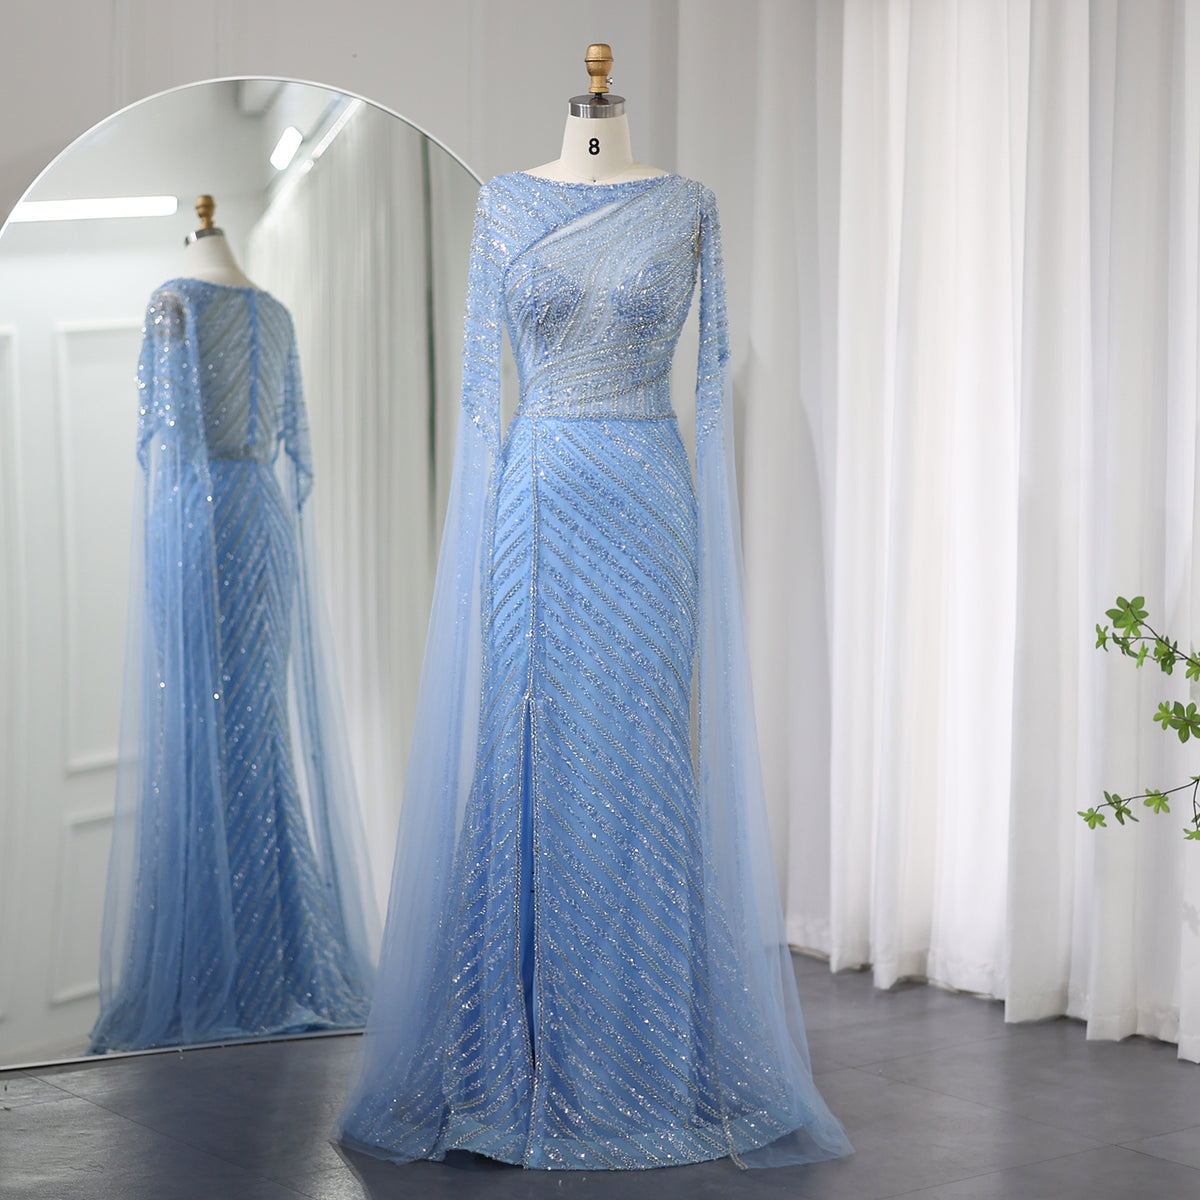 Sharon Said Arabisches Meerjungfrau-Abendkleid in Blau mit Cape-Ärmeln, Luxus-Übergrößen, formelle Hochzeits- und Partykleider SS087